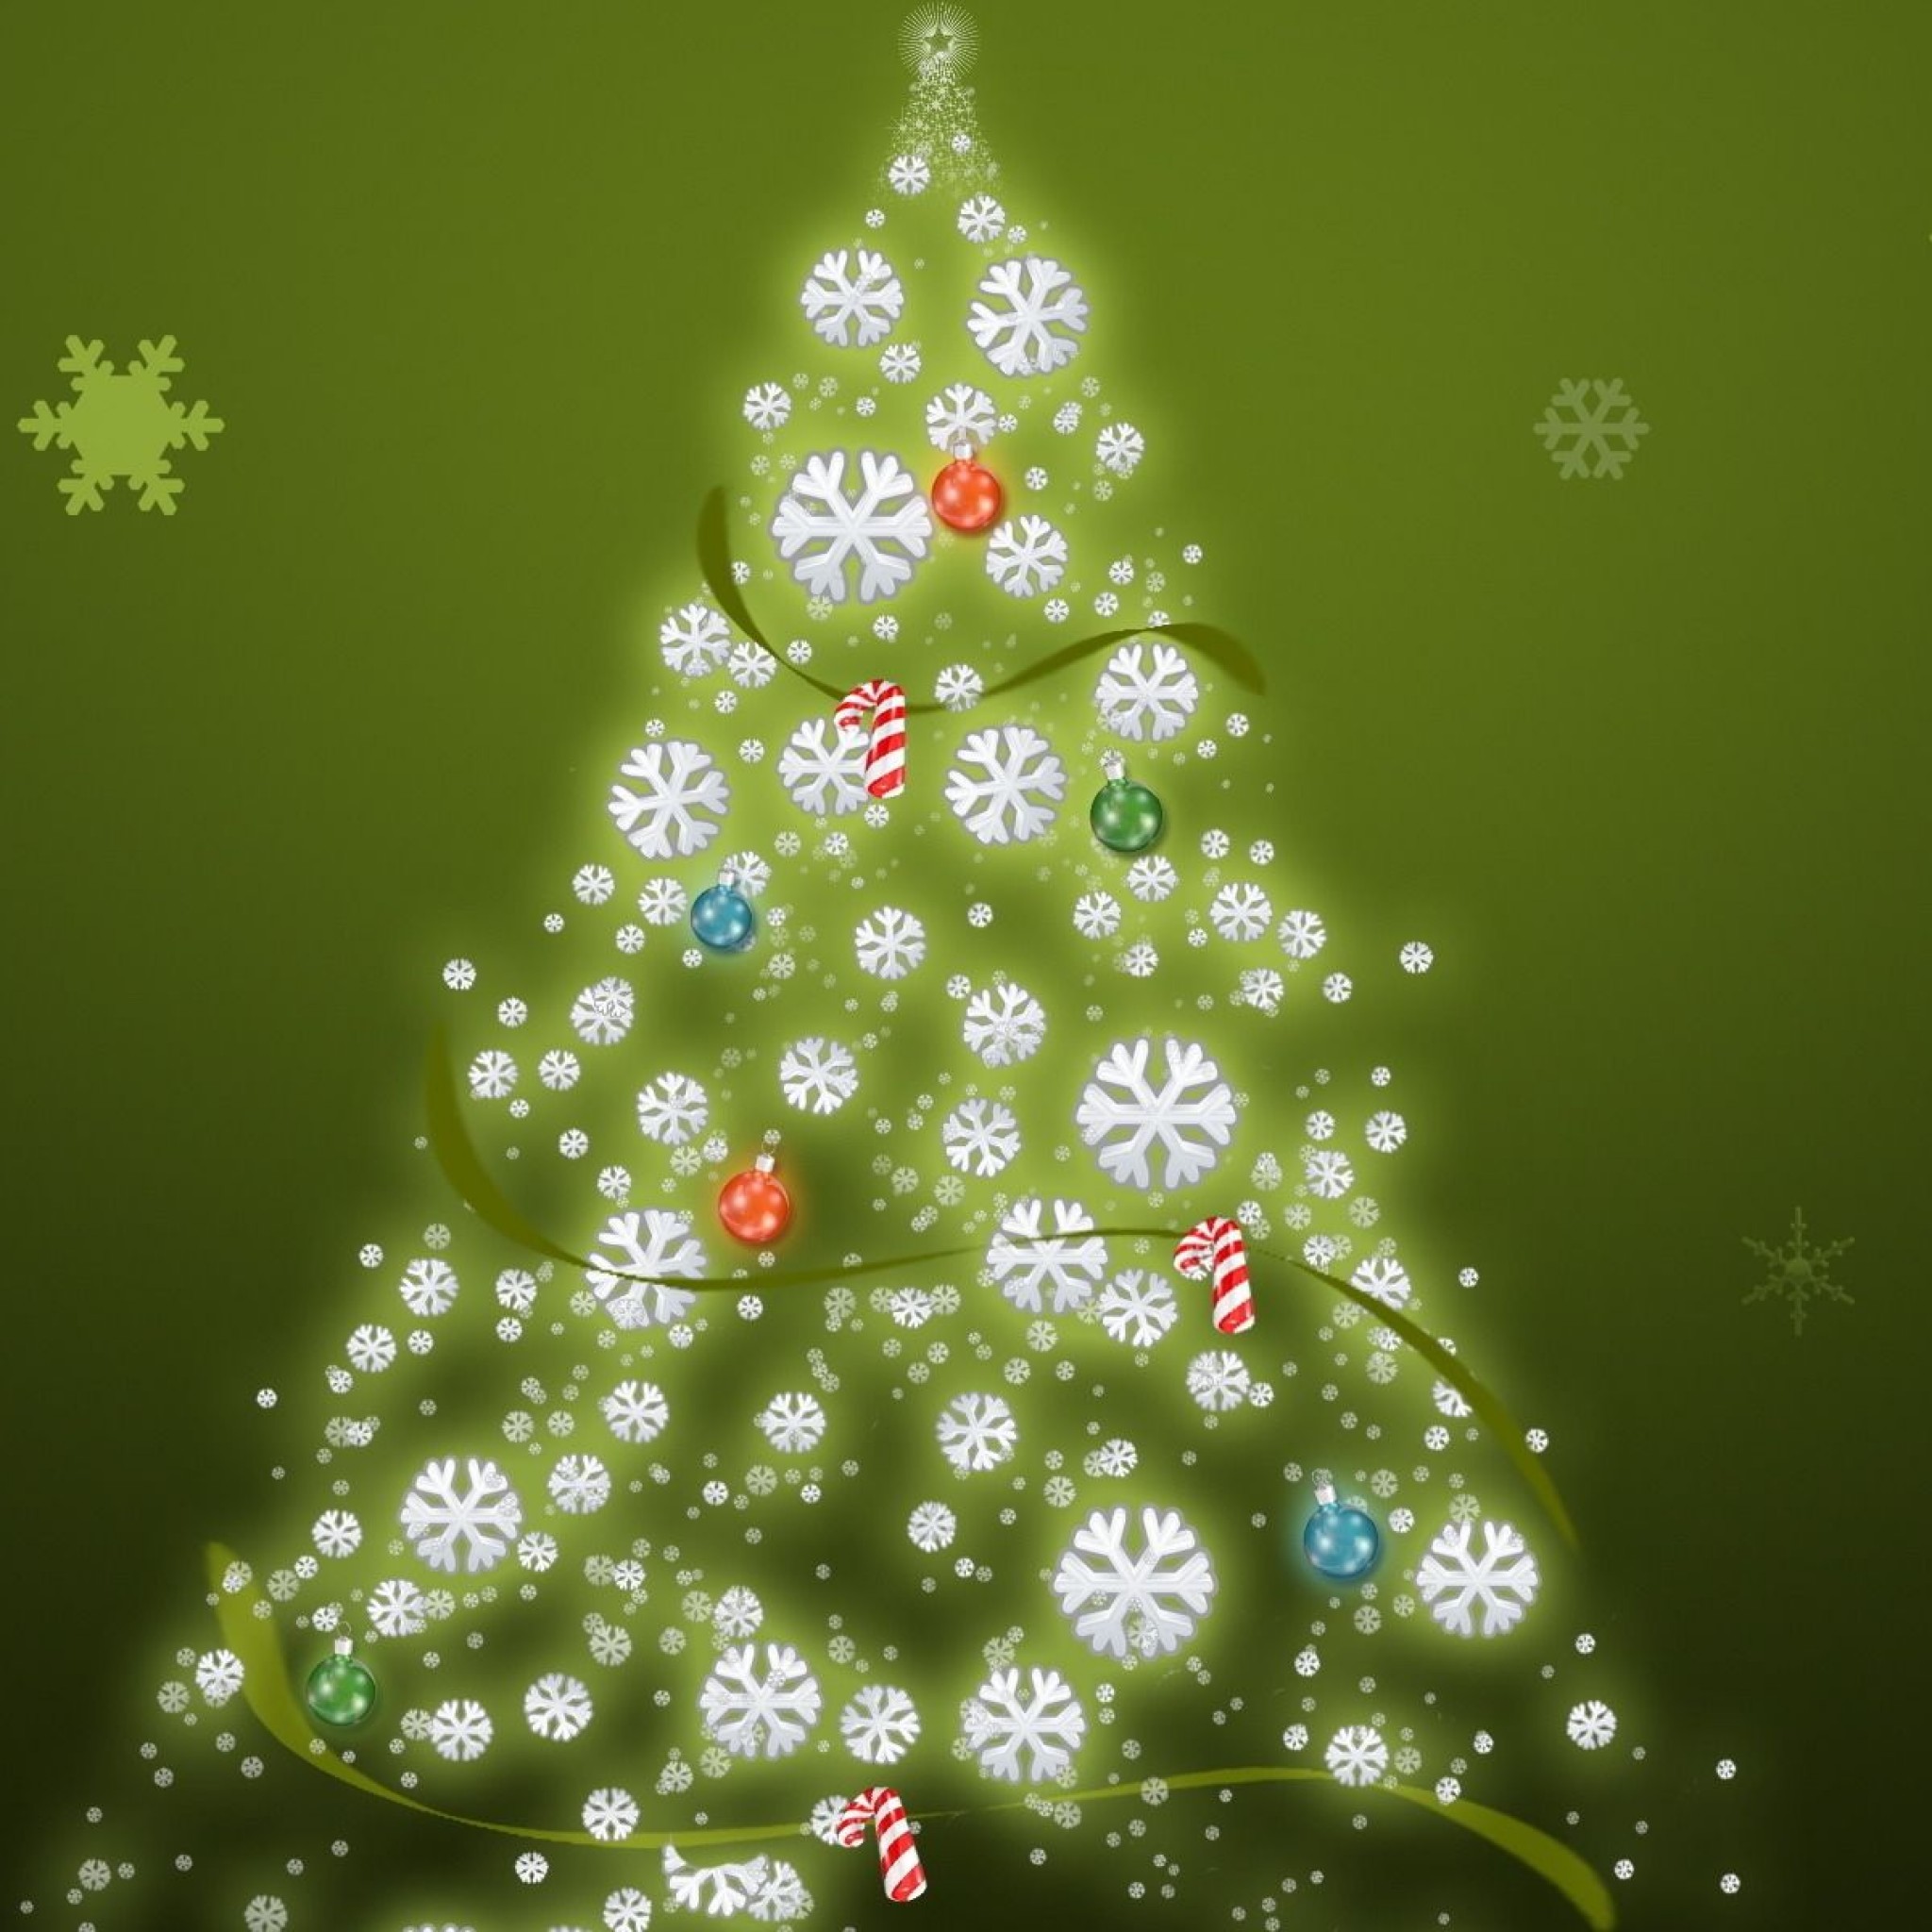 weihnachten ipad wallpaper,weihnachtsbaum,weihnachtsdekoration,baum,grün,colorado fichte